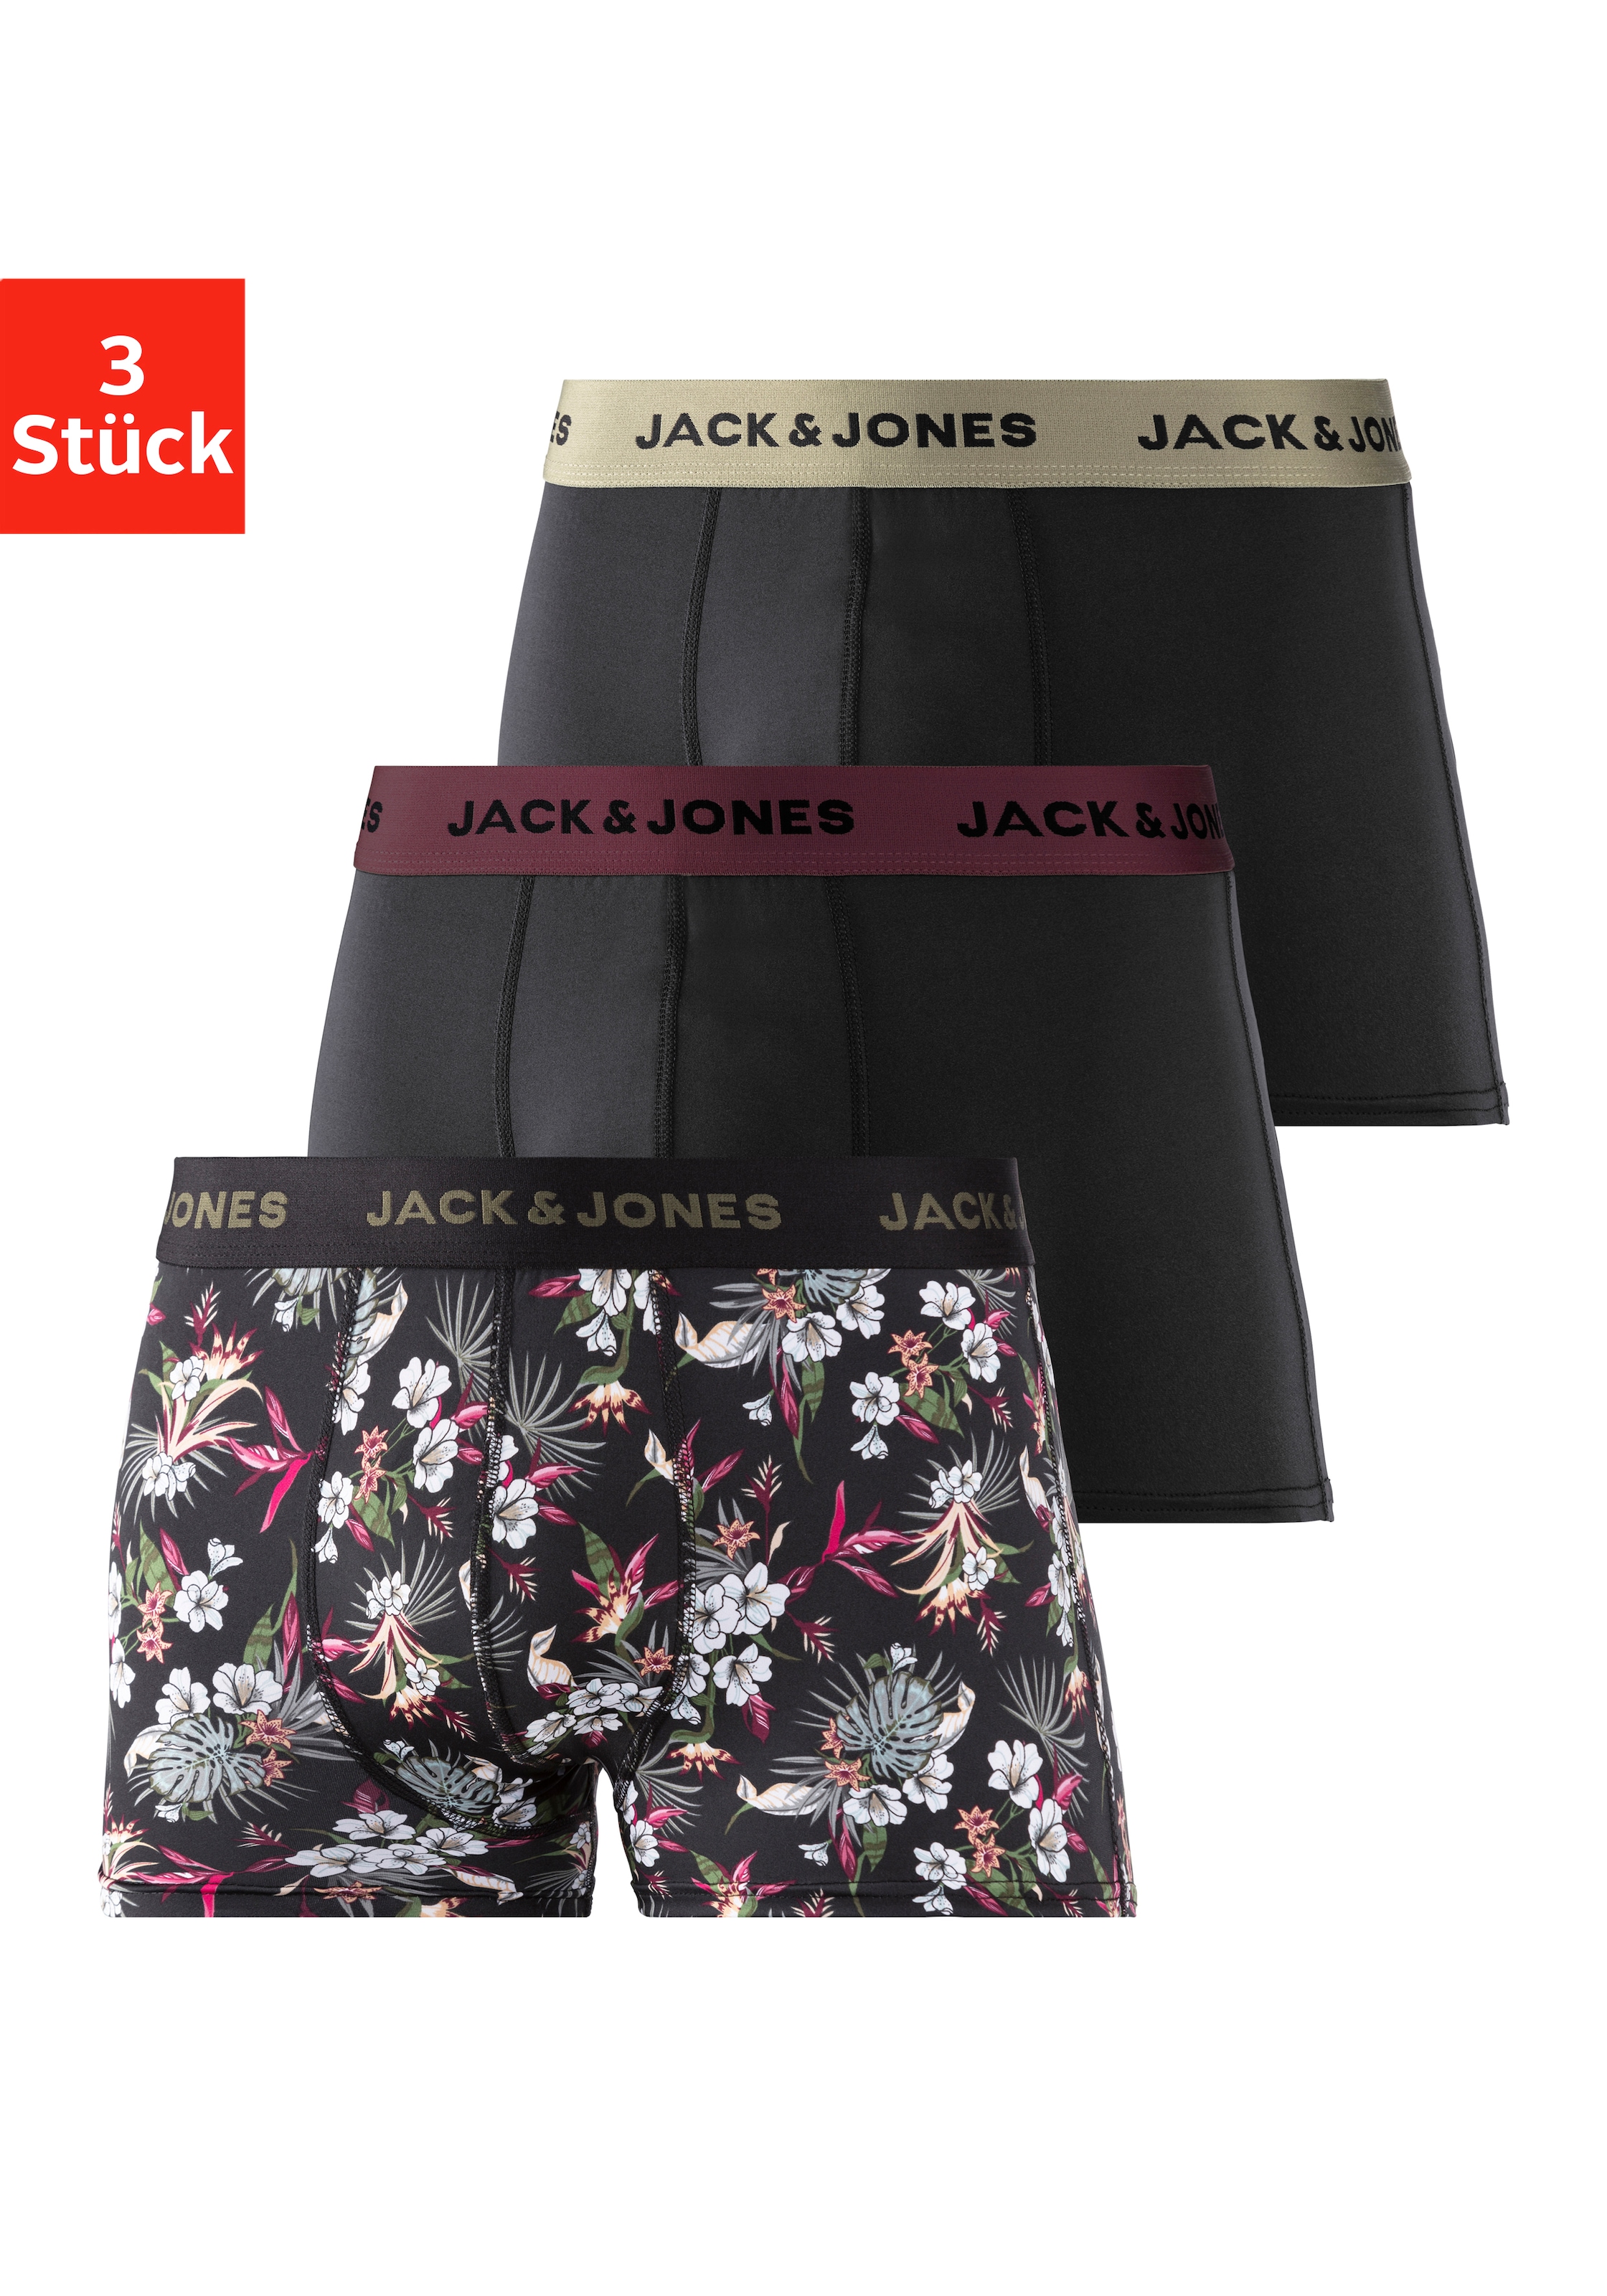 Jack & Jones Jack & Jones Funktionsboxer (Packung 3...